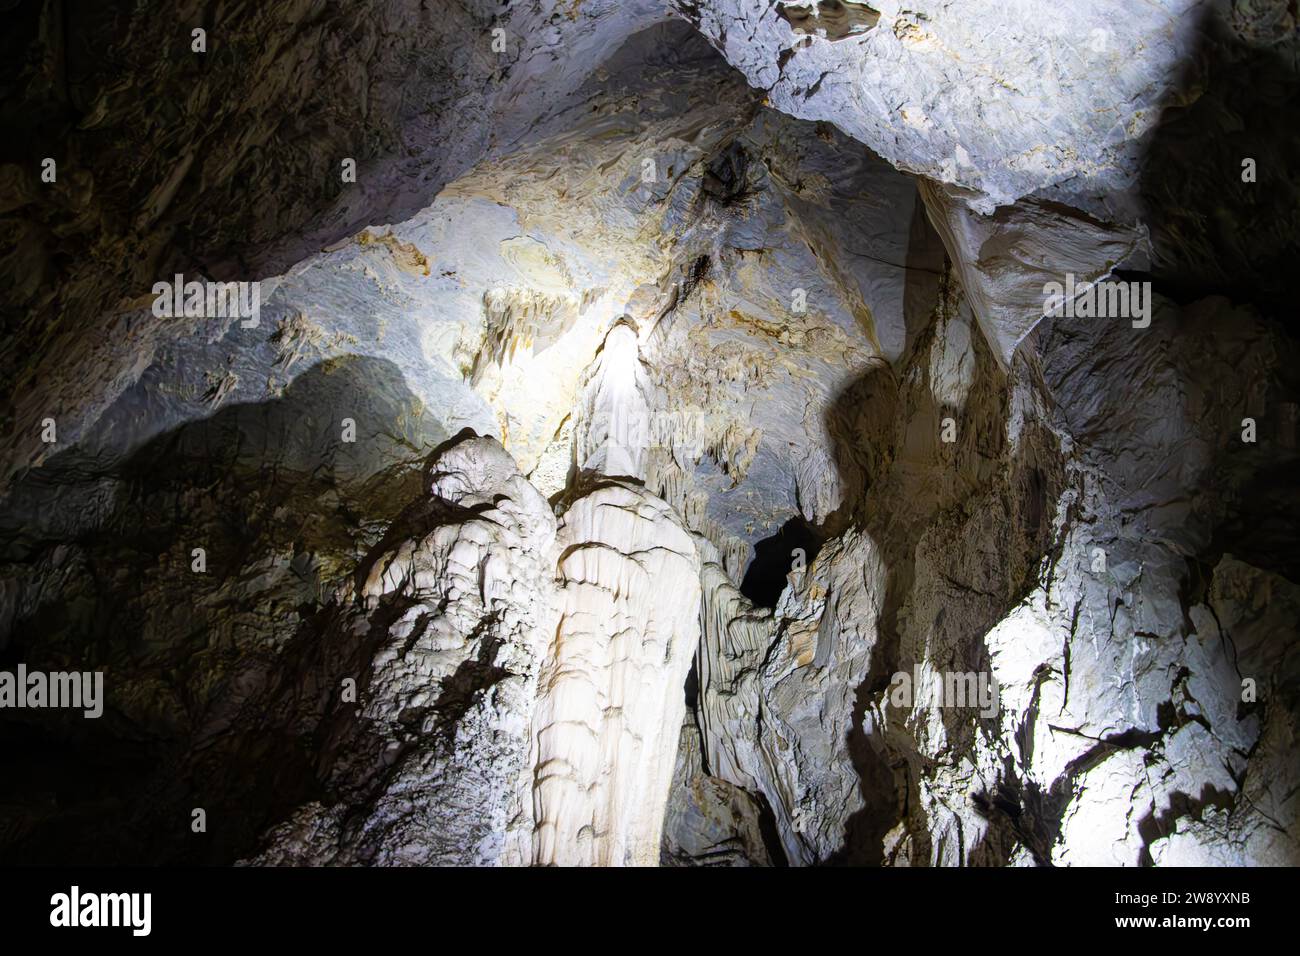 Die Meziad-Höhle. Eine der schönsten Höhlen Rumäniens, die Meziad-Höhle ähnelt einer unterirdischen gotischen Kathedrale. Stockfoto